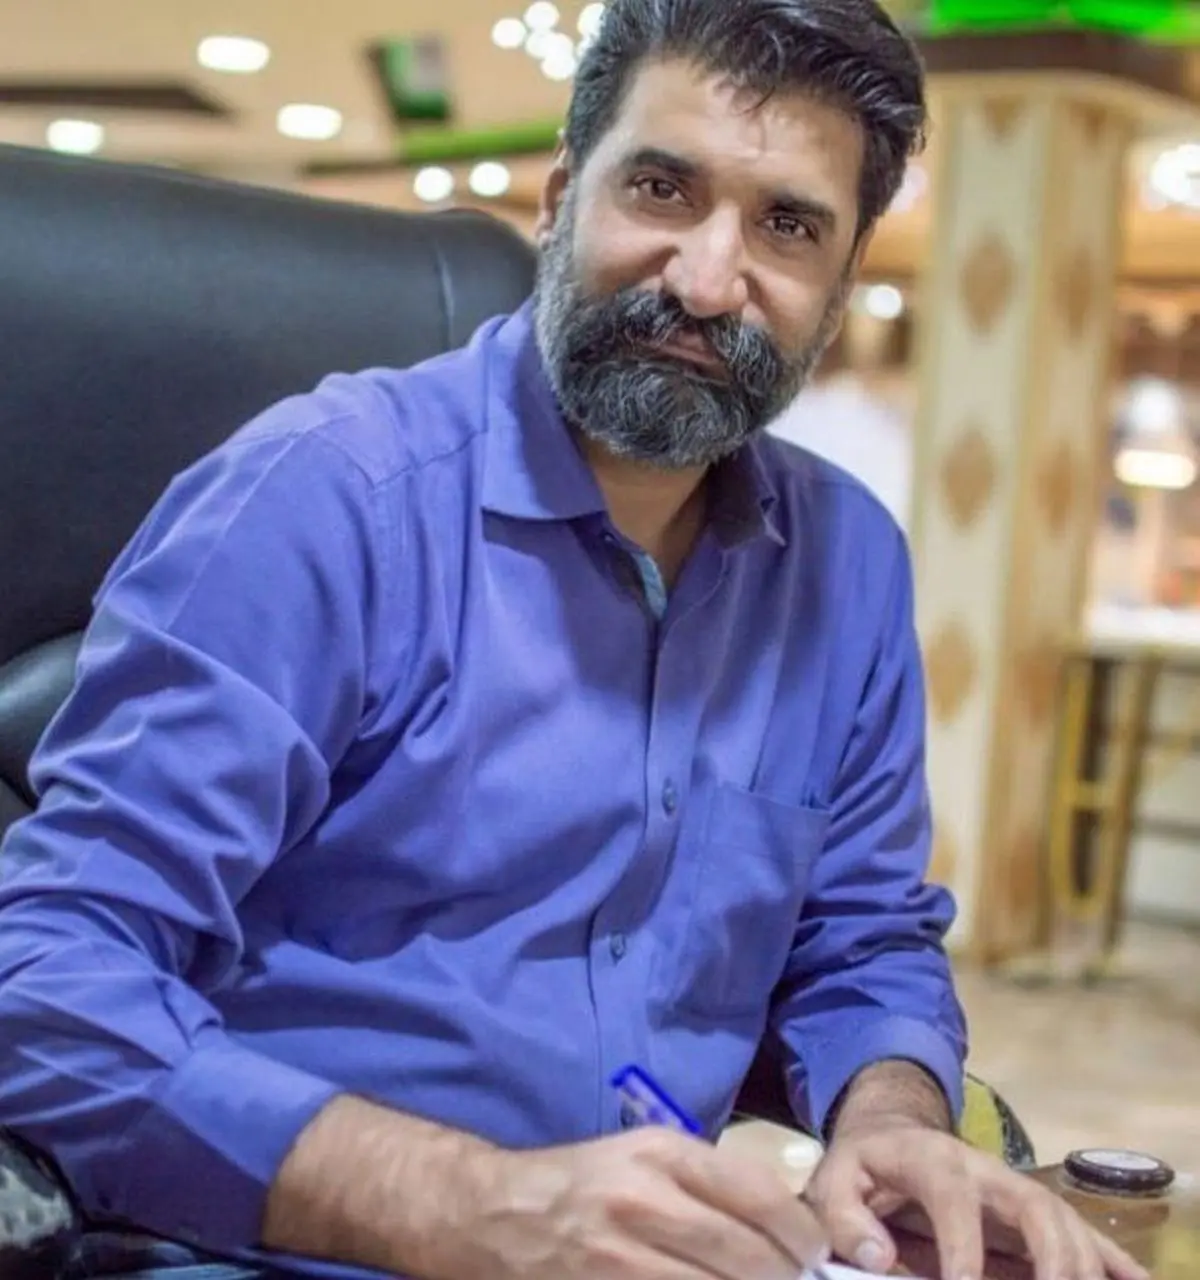 آخرین خبر از عامل نبش قبر مجید عبدالباقی